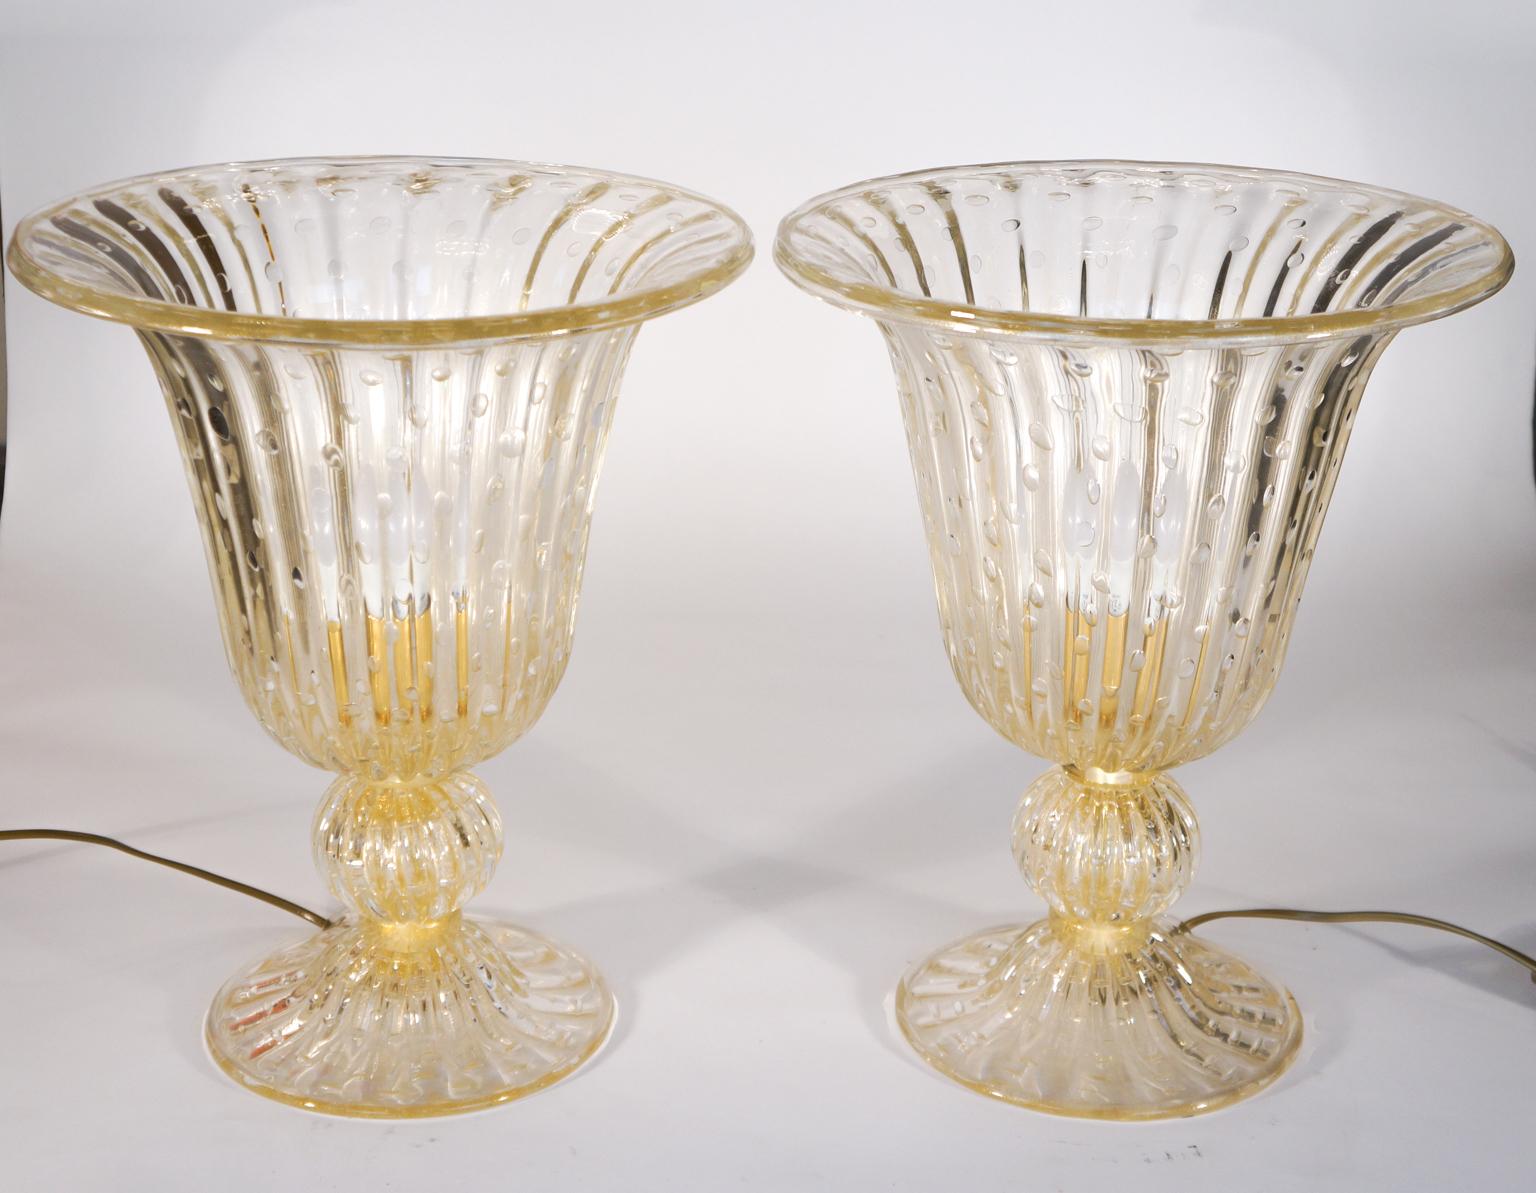 Exklusives Paar Tischlampen aus Murano-Glas in Kristallfarbe mit 24 Karat Blattgoldverzierungen und inneren Blasen. Die Produkte werden vollständig von dem Glasmachermeister Alberto Dona aus Murano handgefertigt.
Projekt des Murano-Glasmeisters